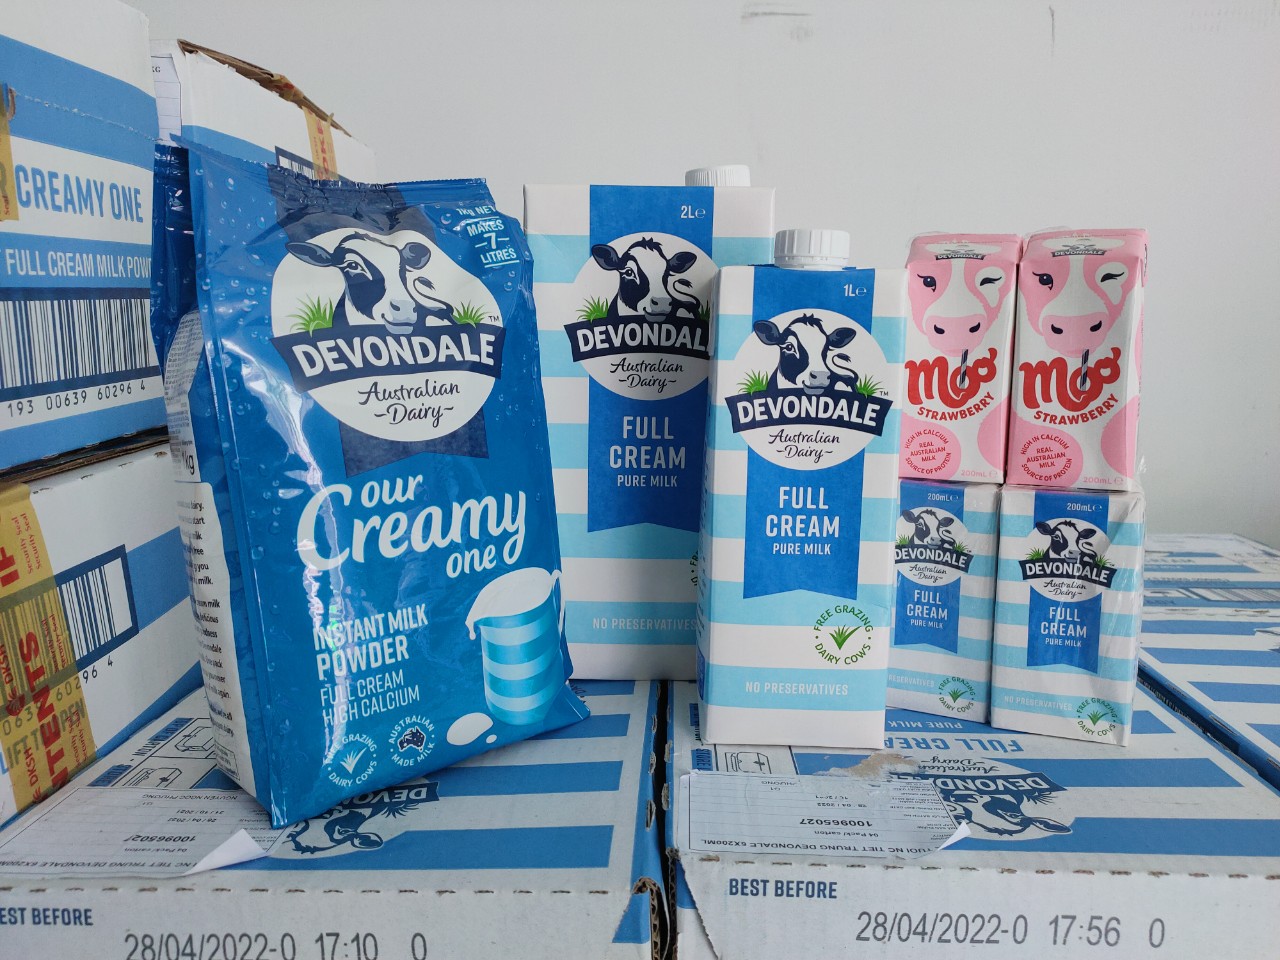 Milkman chuyên cung cấp nguồn sữa sỉ giá rẻ cho các đại lý nhỏ lẻ